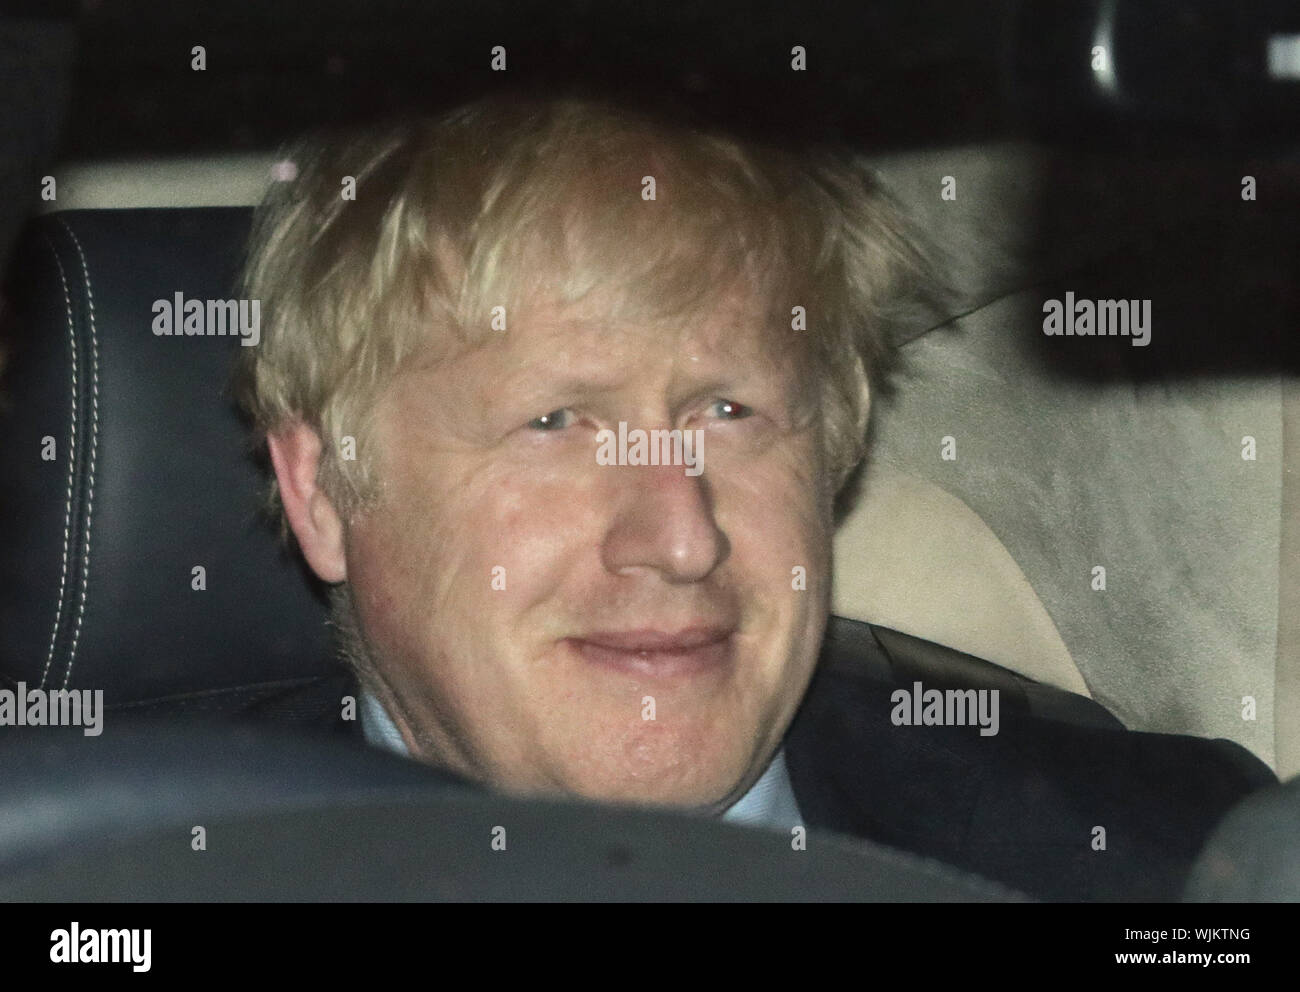 Premier ministre Boris Johnson quitte la Chambre des communes, Londres après députés ont voté en faveur d'autoriser une contre-partie alliance de prendre le contrôle de la Chambre des communes le mercredi de l'ordre du jour dans le but de bloquer un no-deal Brexit le 31 octobre. Banque D'Images